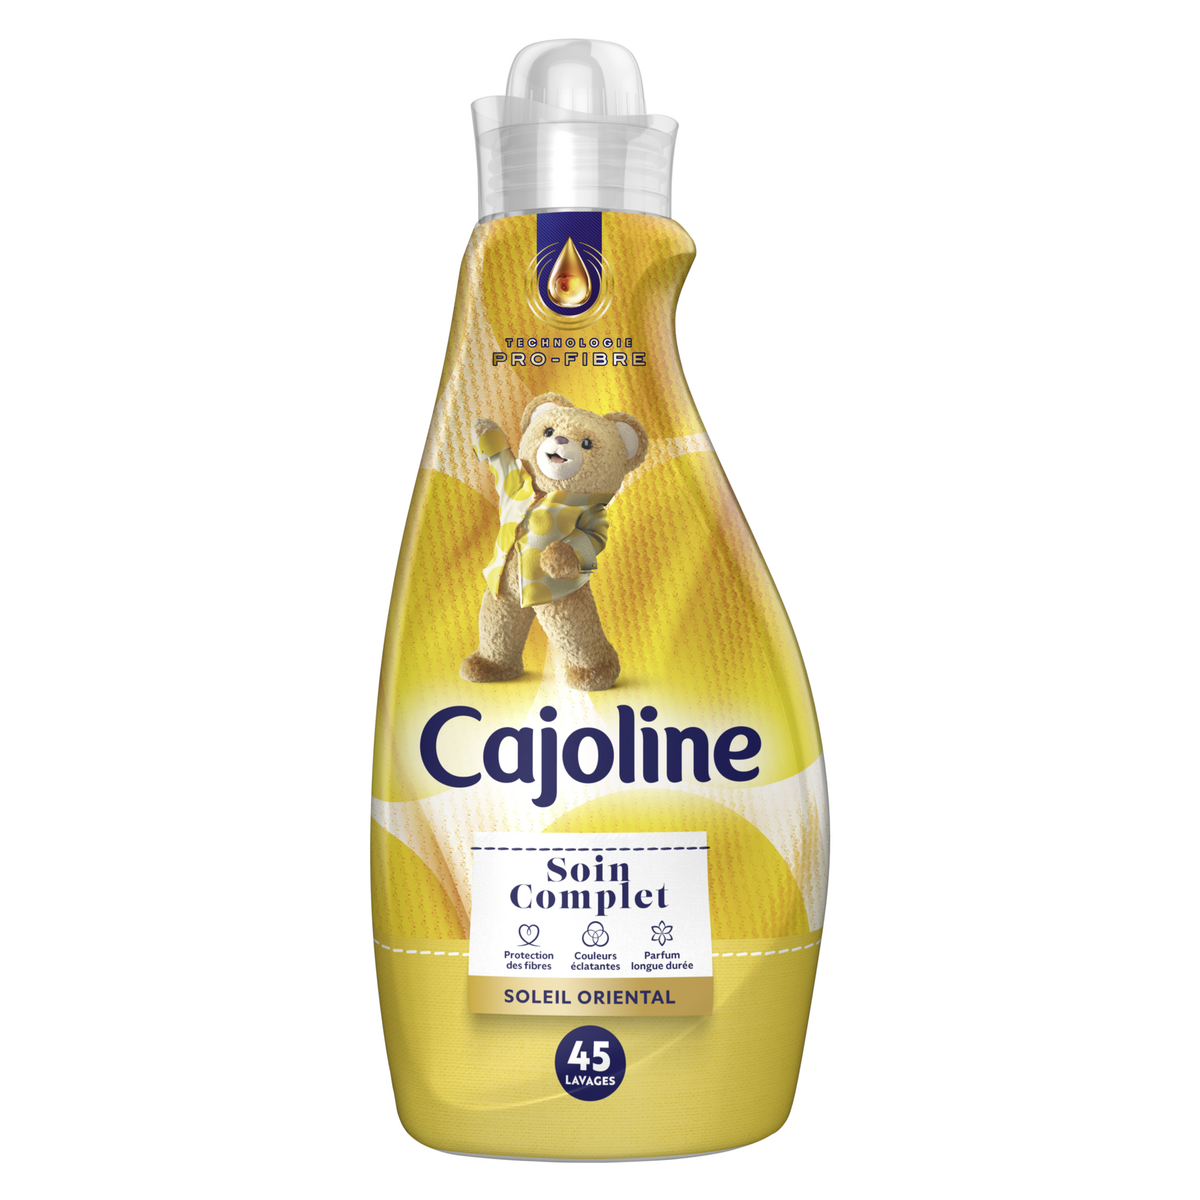 Cajoline Adoucissant Soin Complet Soleil Oriental 45 Lavages - 1125 ml